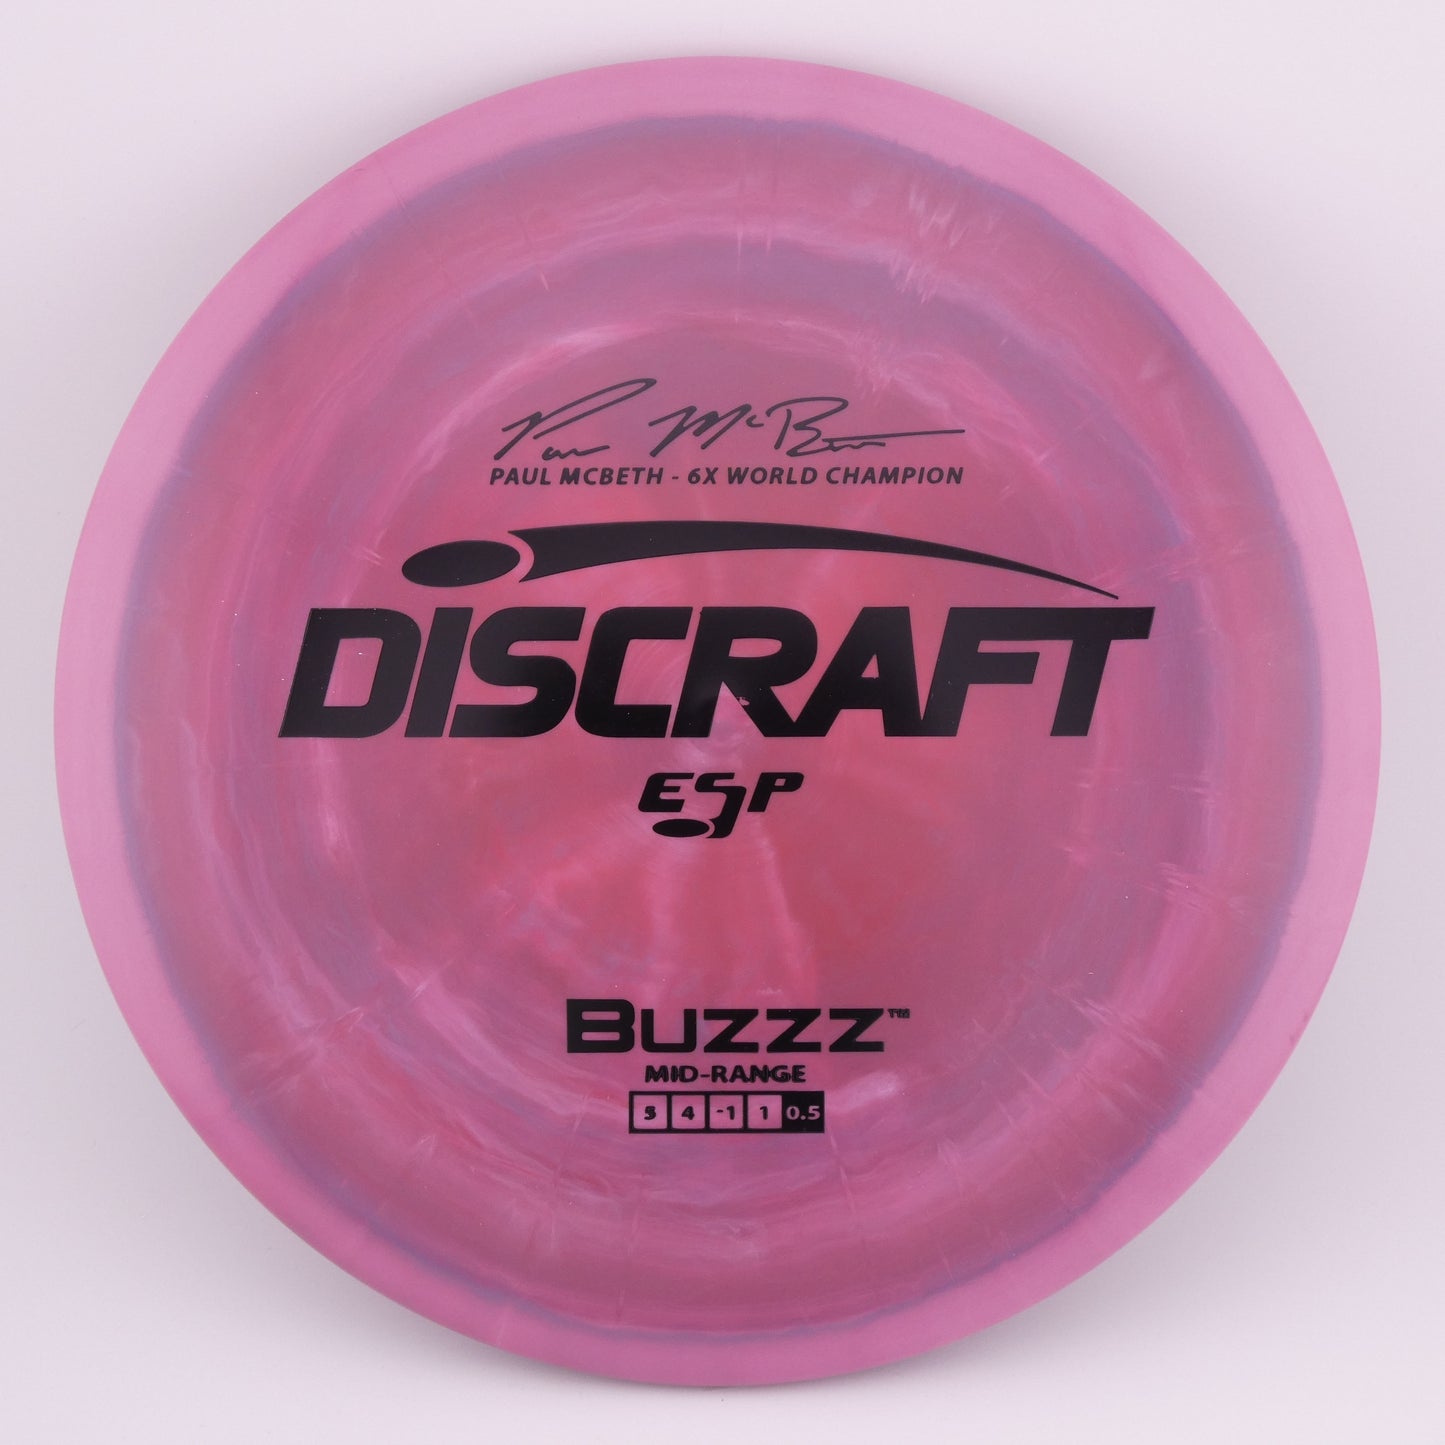 ESP Buzzz 173-174g